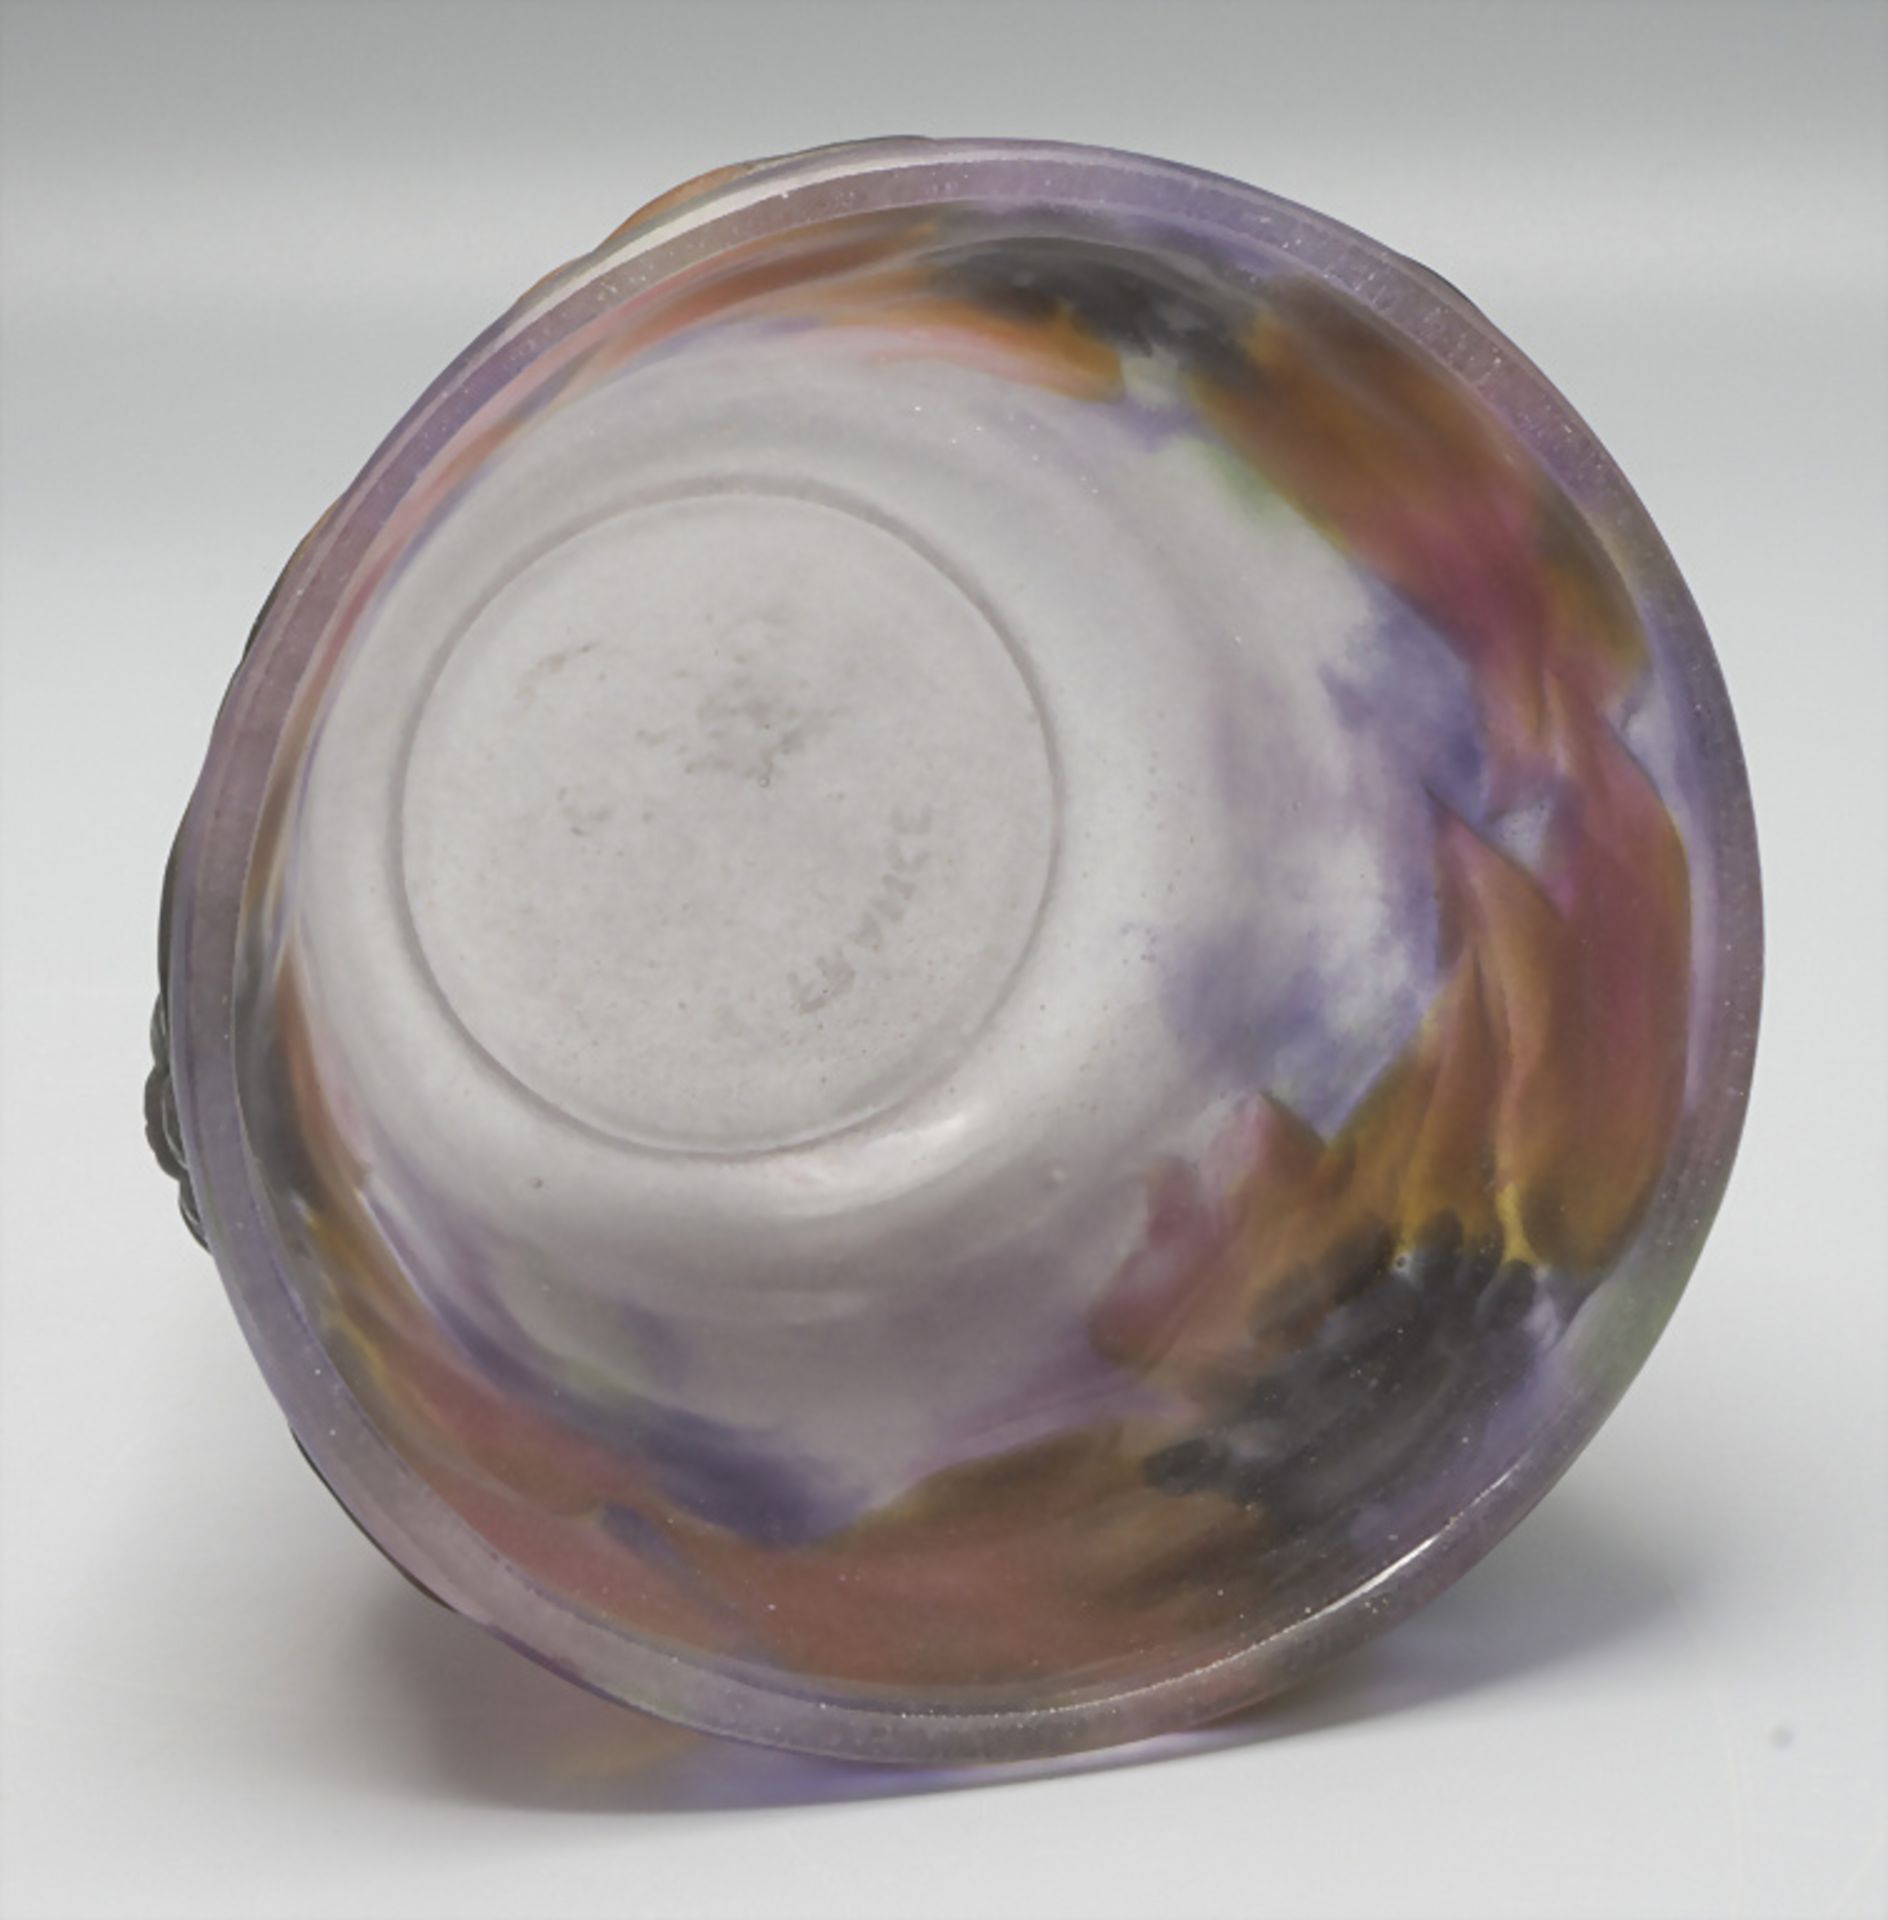 Jugendstil Schale 'Lierre' / Art Déco glass bowl 'Ivy', Gabriel Argy-Rousseau, Paris, 1919 - Image 3 of 6